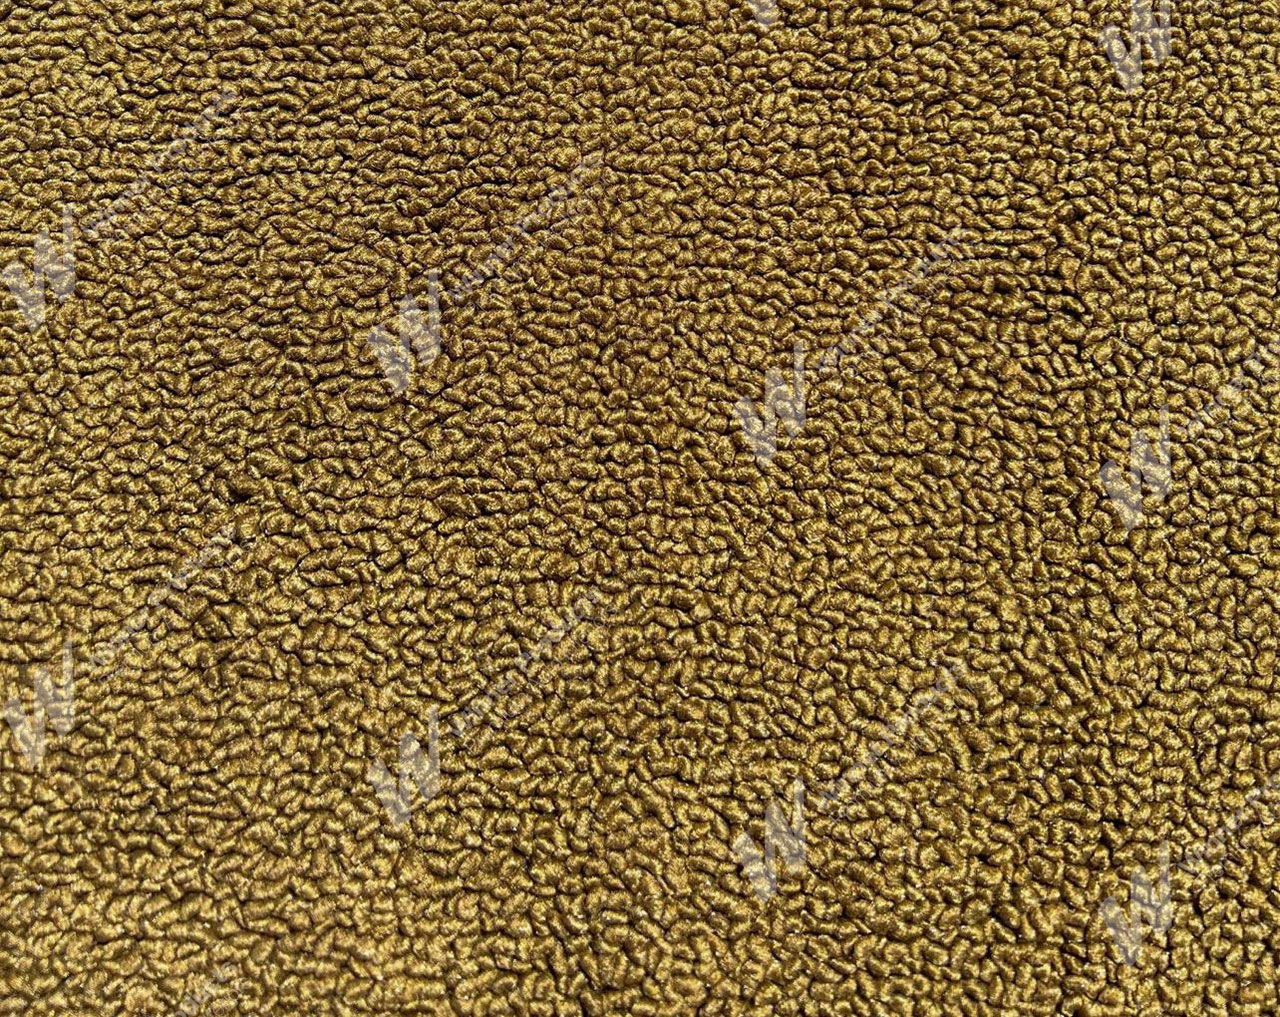 Holden Kingswood HT Kingswood Ute 11G Antique Gold & Castillion Weave Carpet (Image 1 of 1)